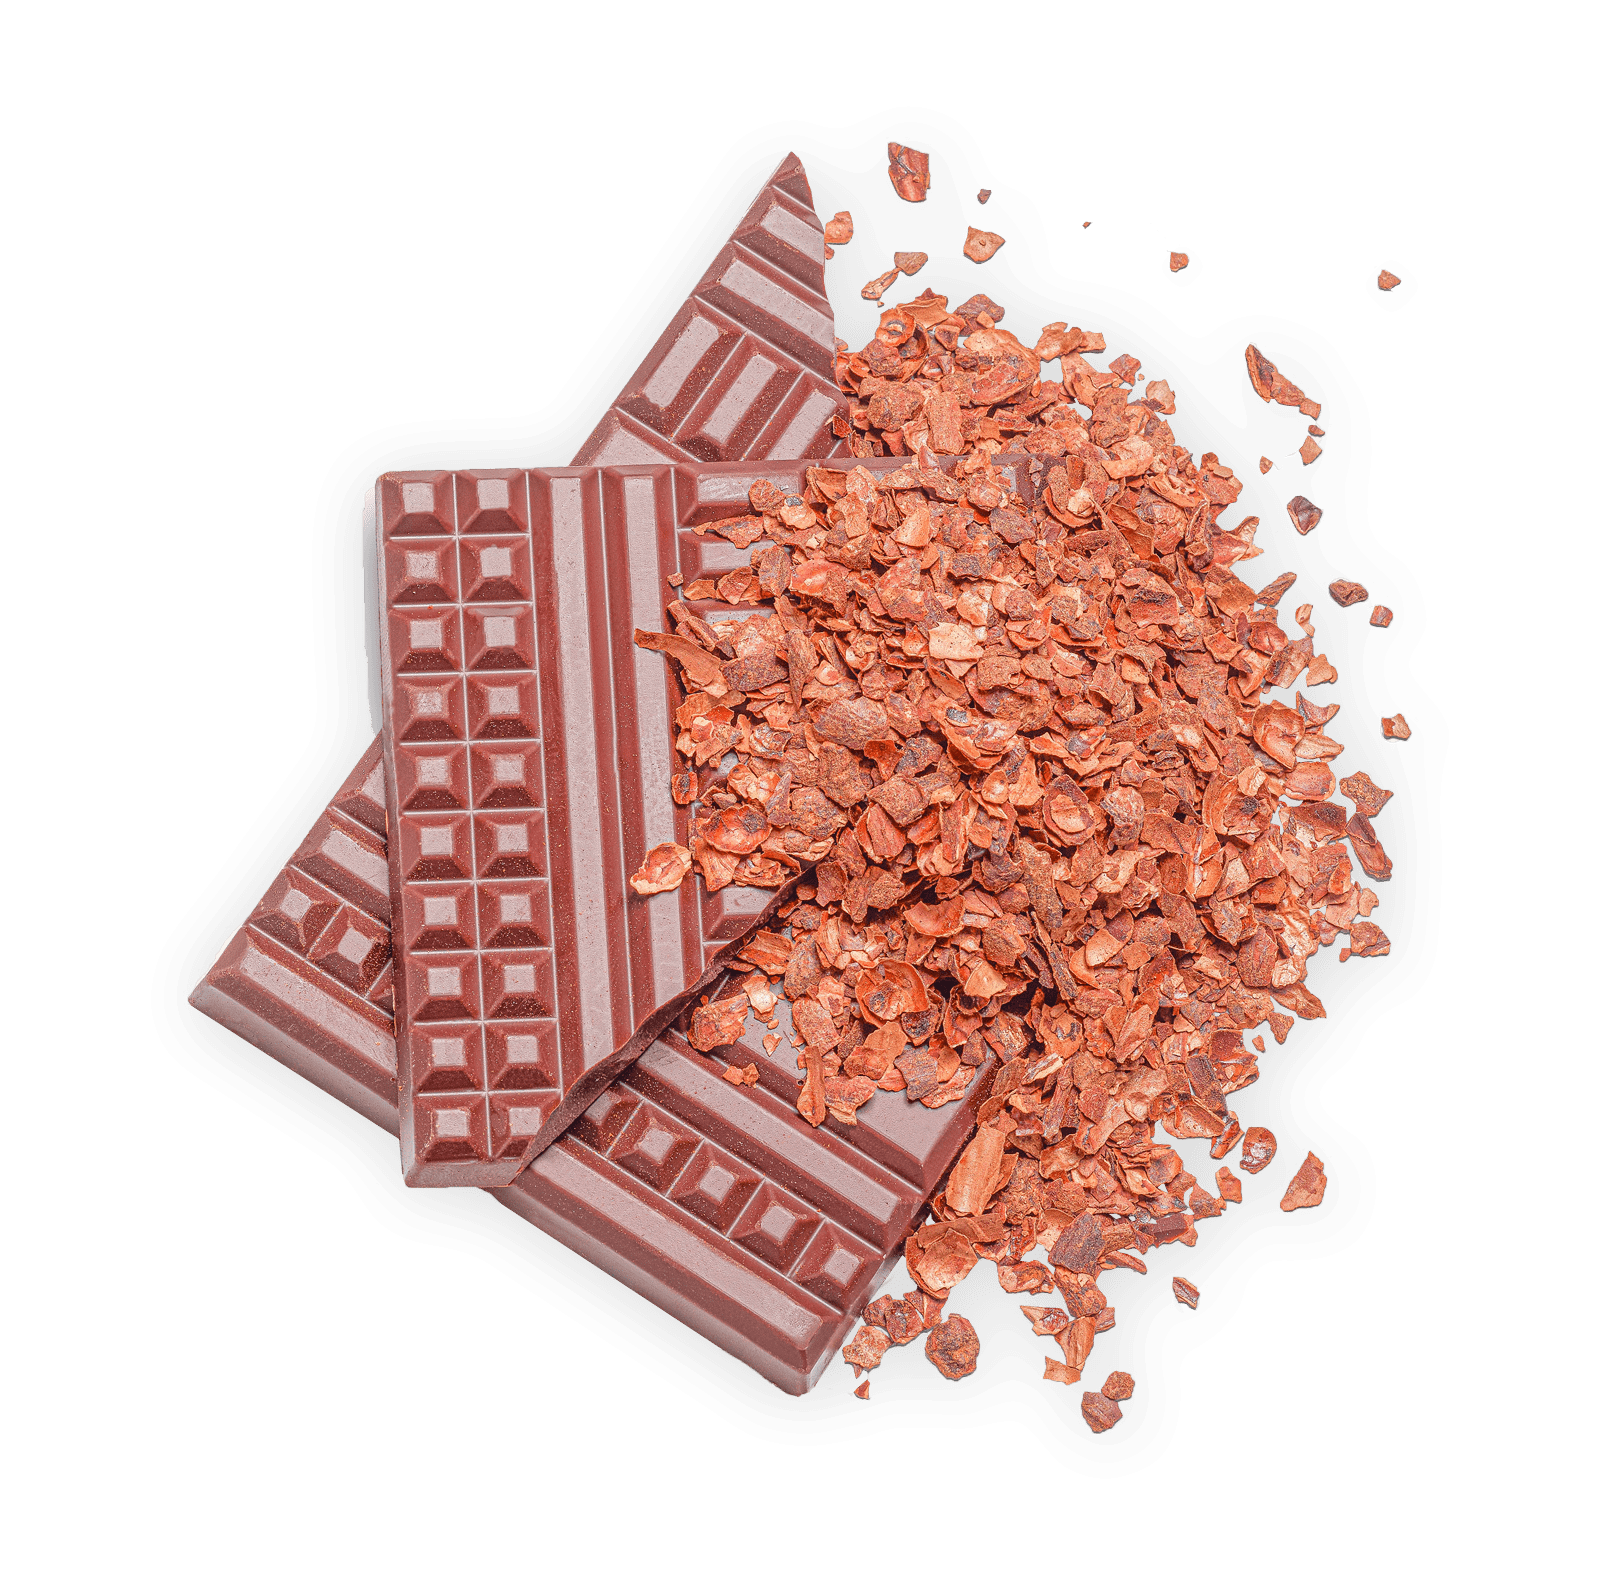 Peruvian chocolate, ganache gelato